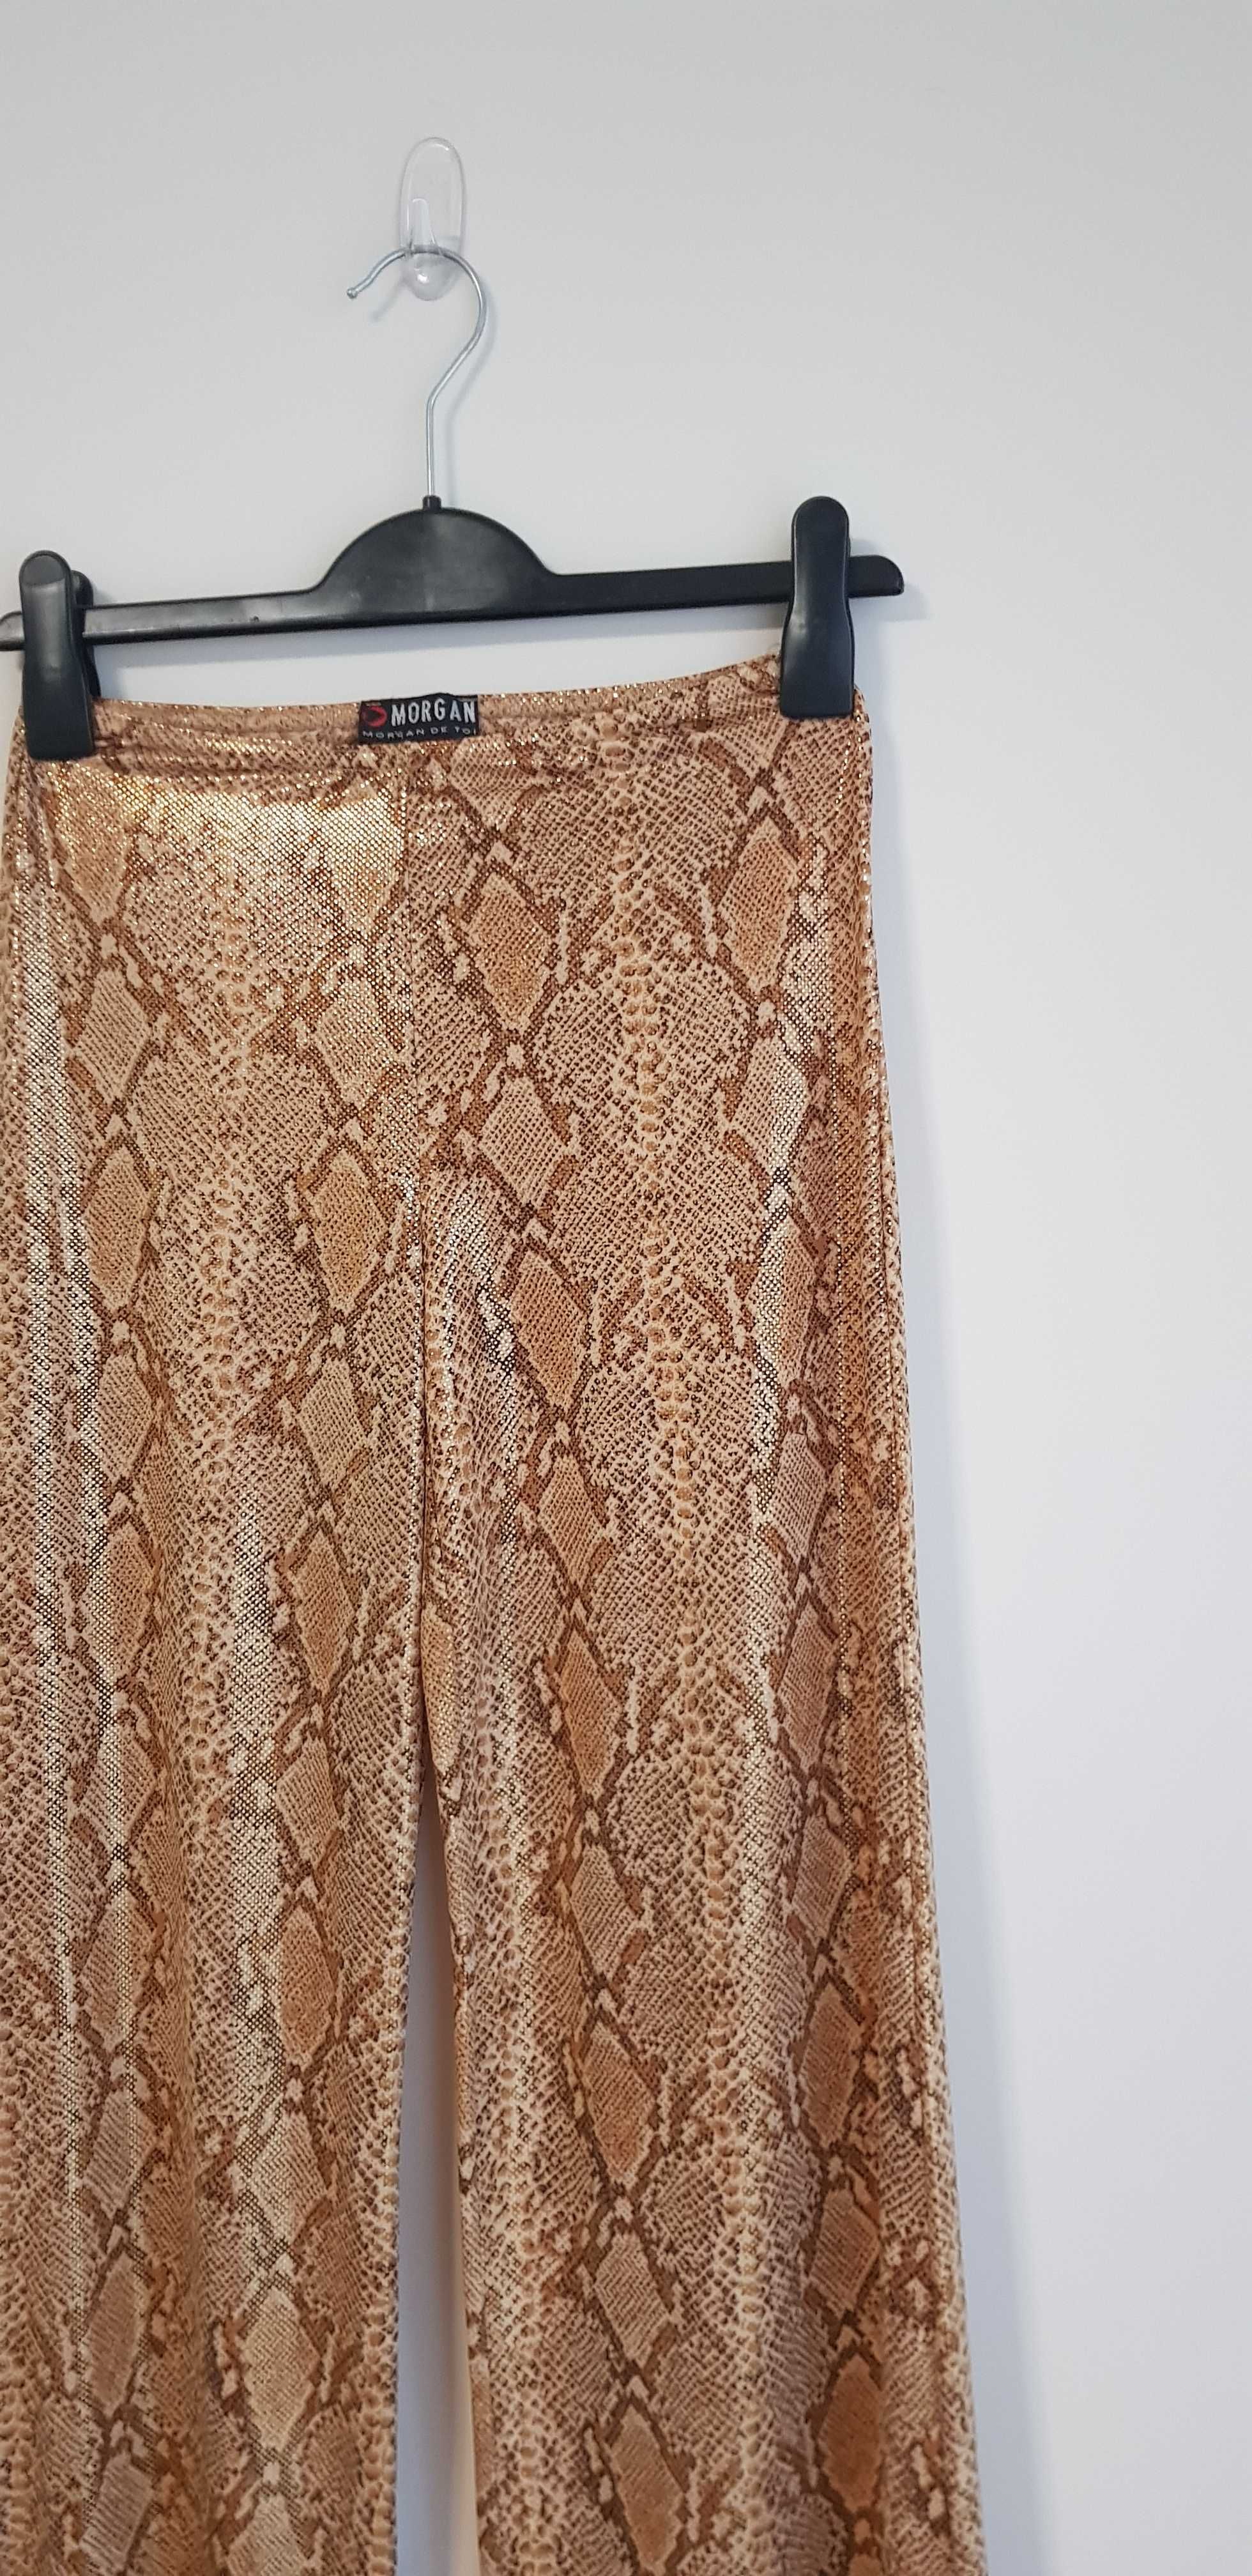 Nowe damskie błyszczące wężowe złote spodnie wąż lata 70/80 Morgan